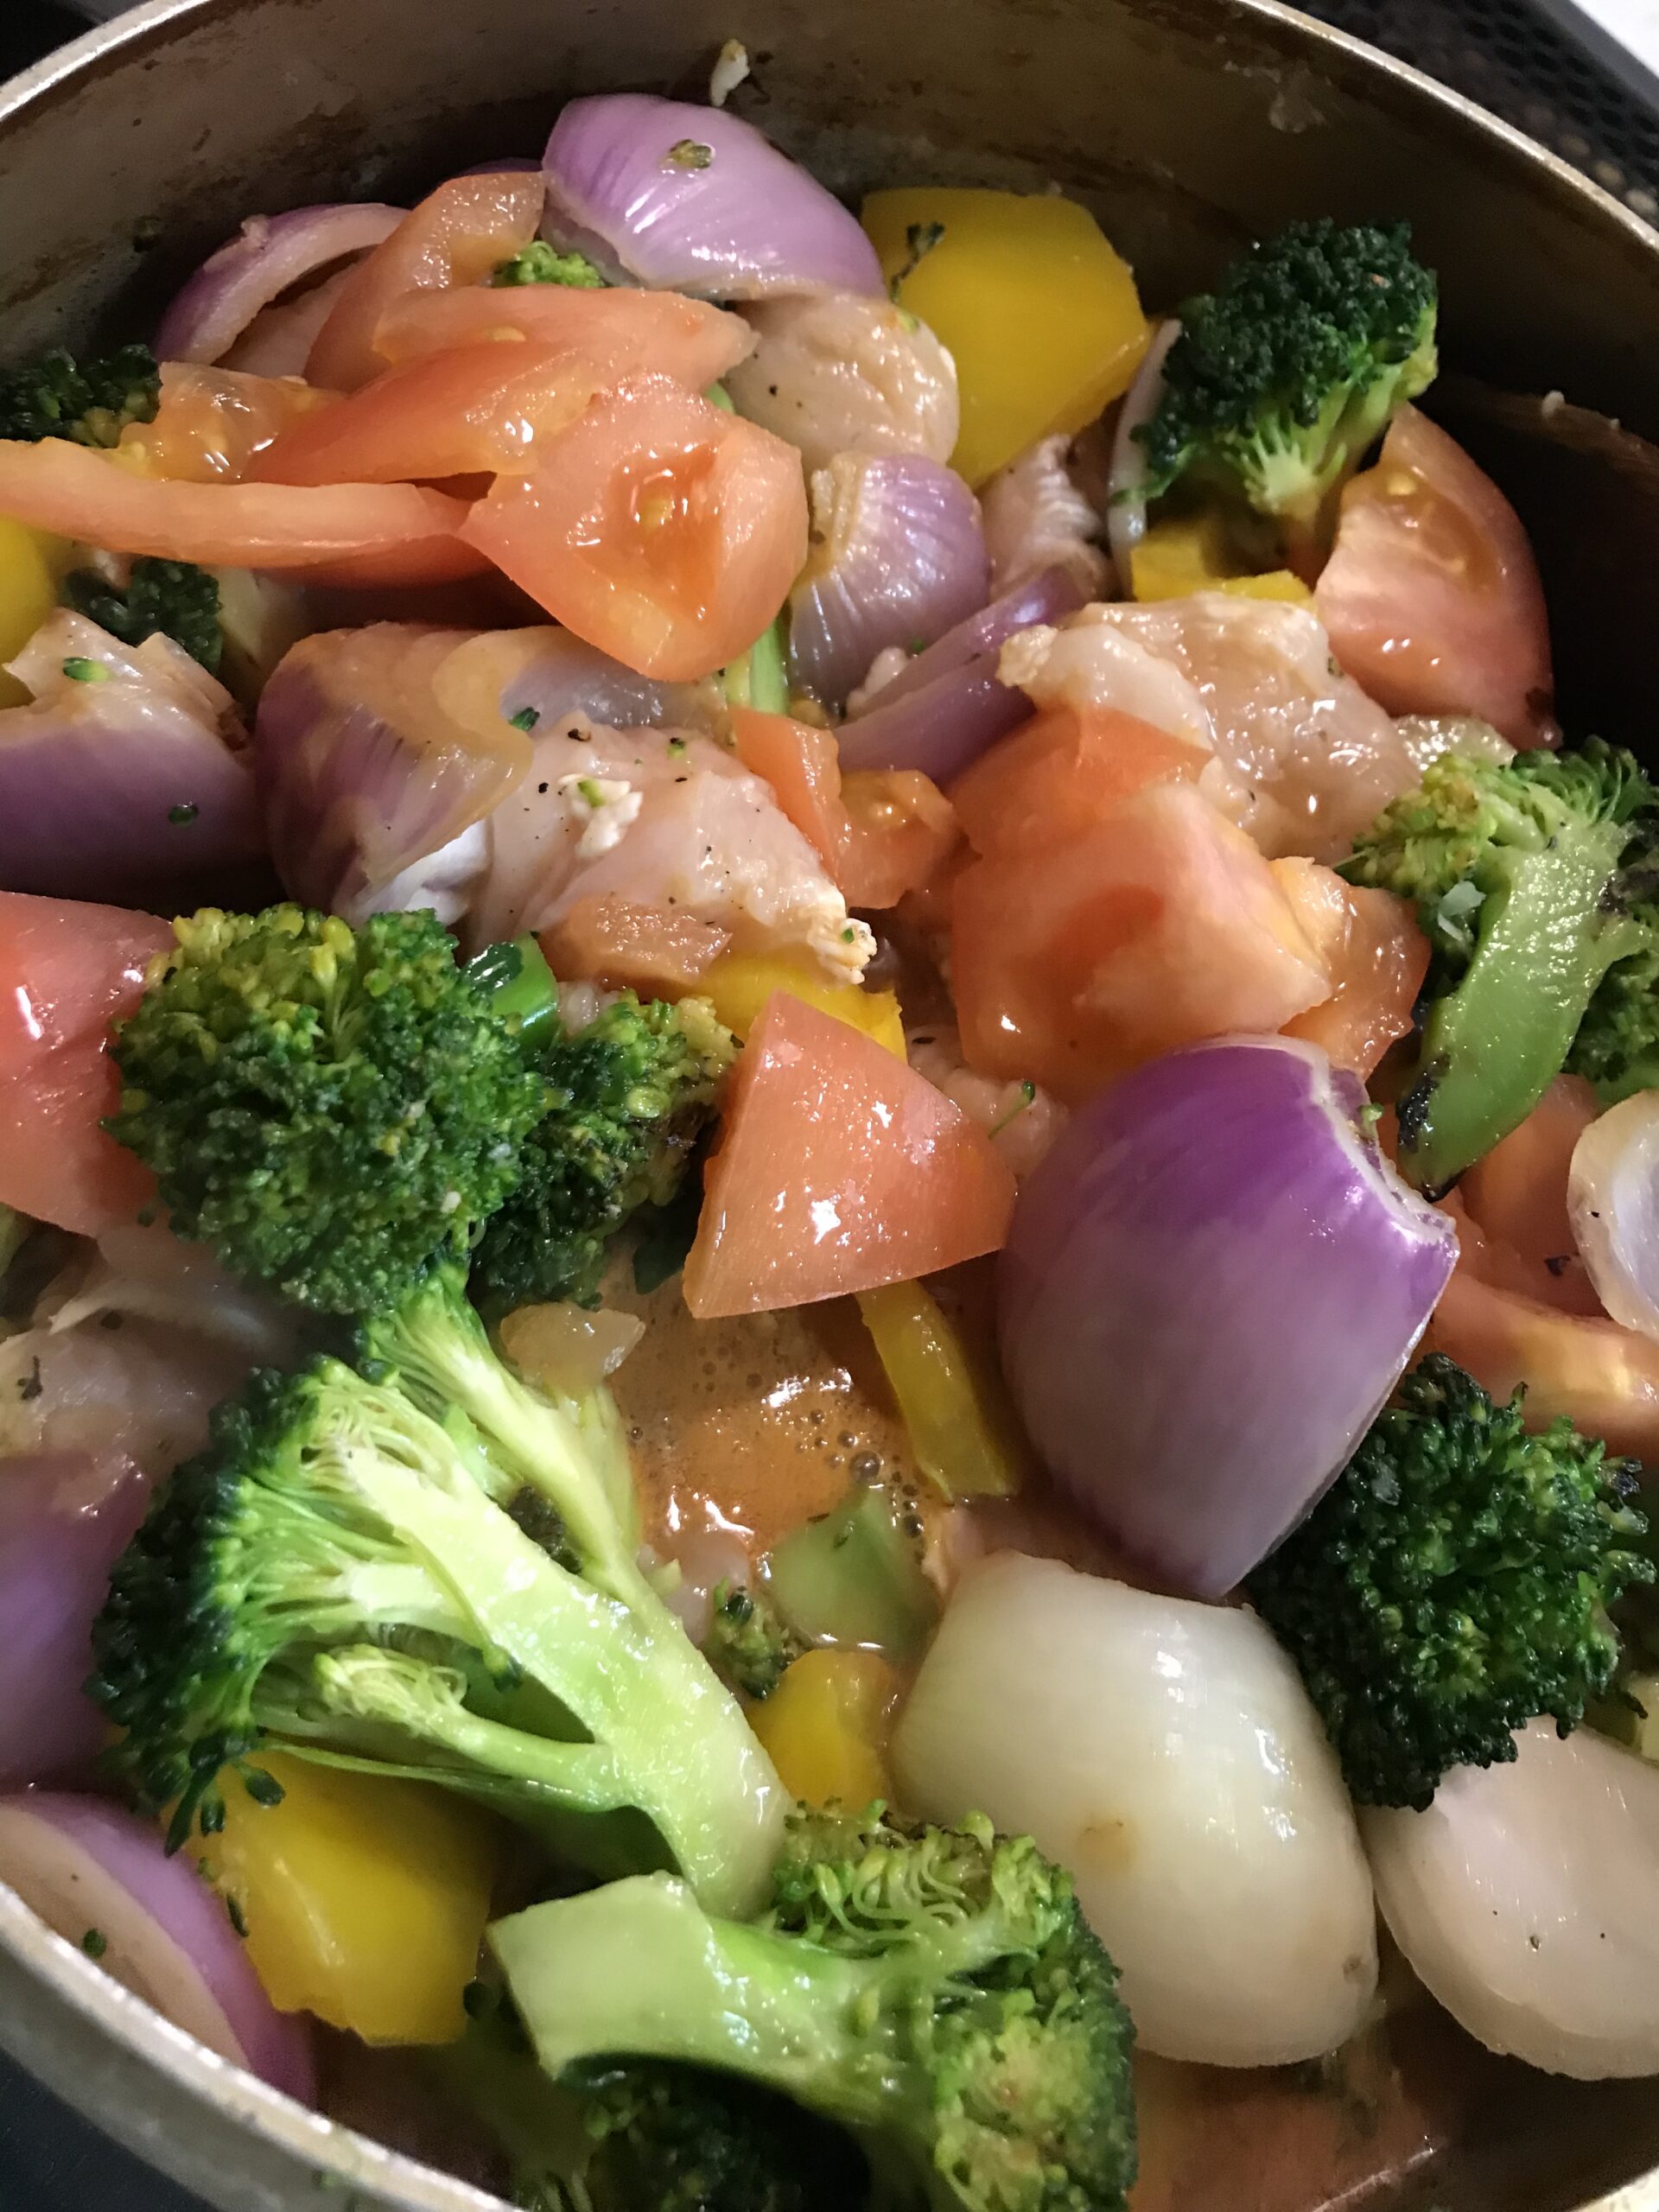 材料の紫玉ねぎなどの野菜、鶏肉、豆を煮込む途中の様子を撮影した写真